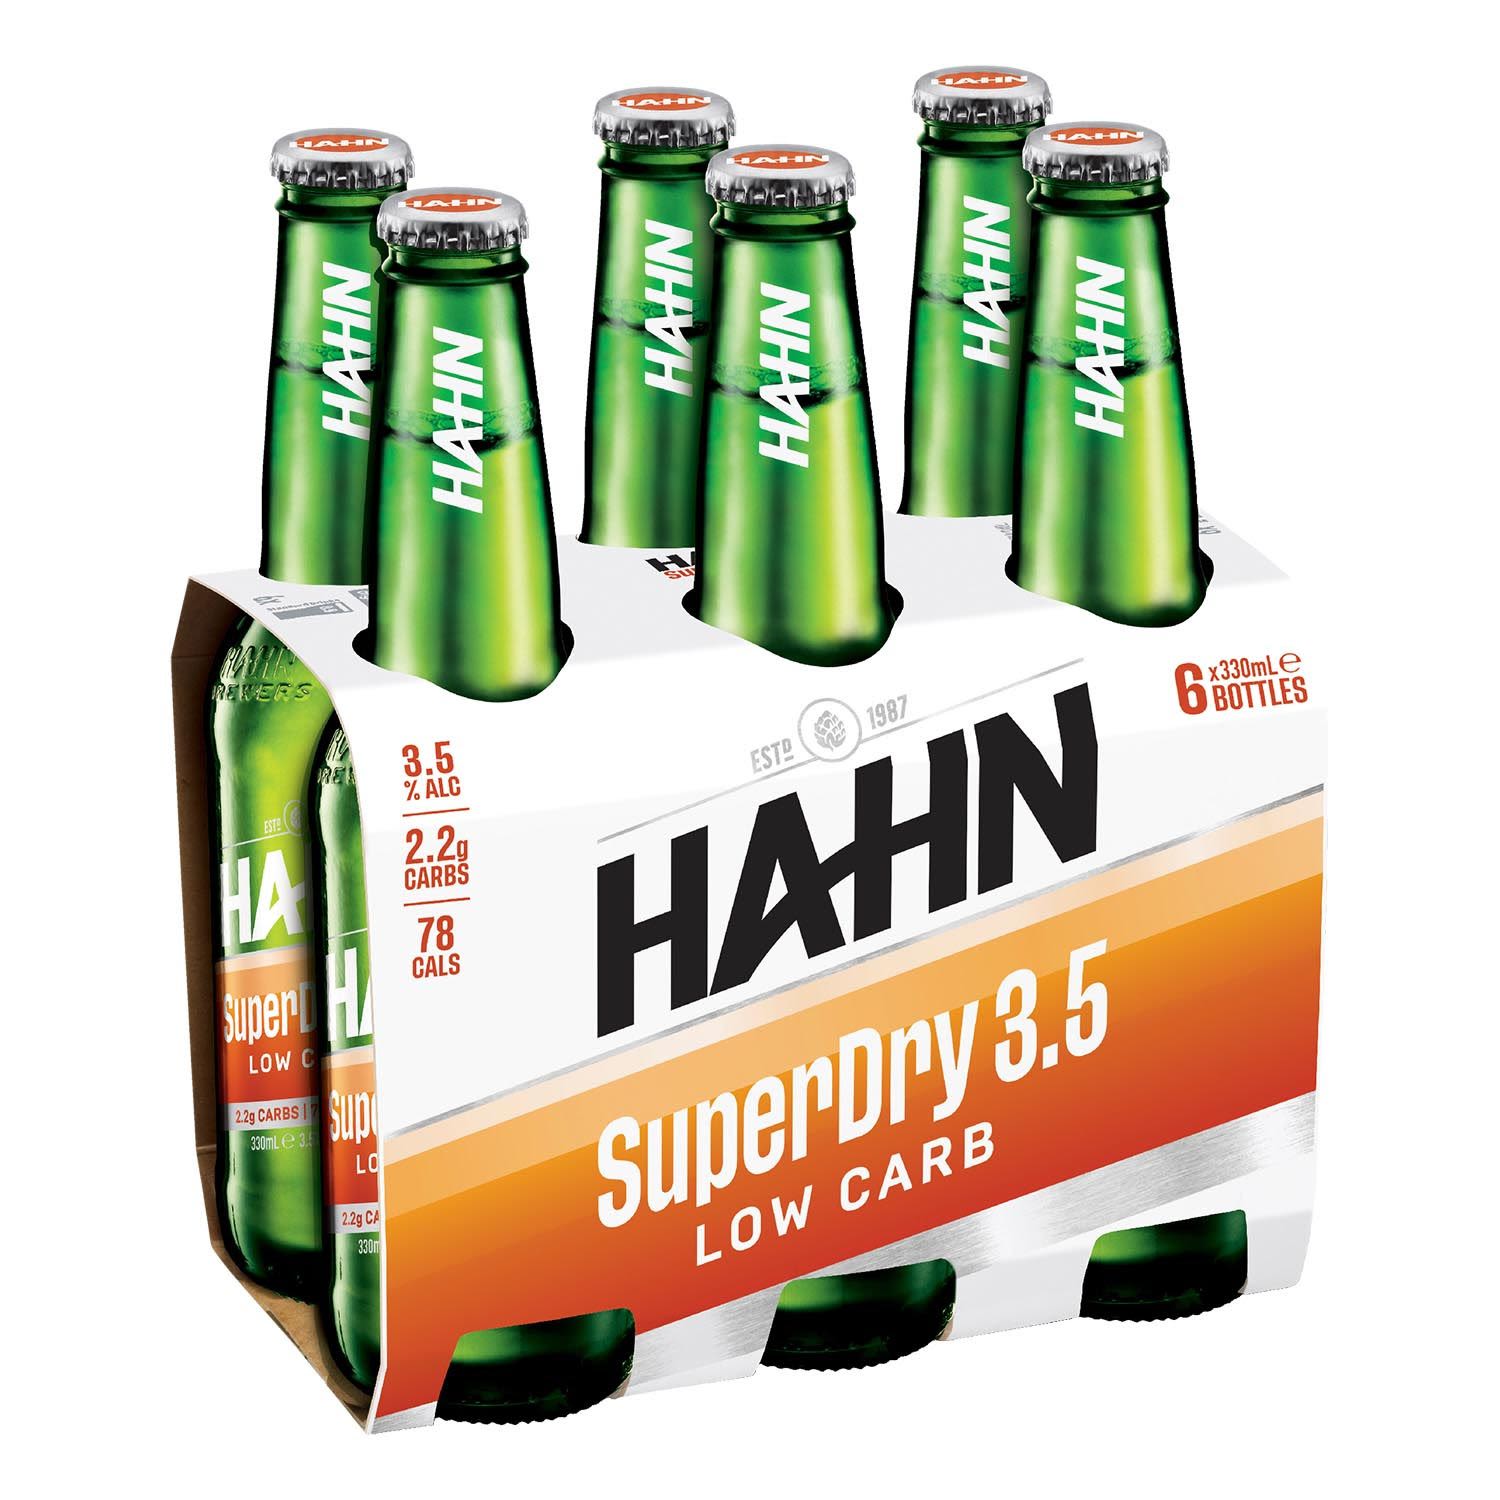 Hahn SuperDry 3.5% Bottle 330mL 6 Pack